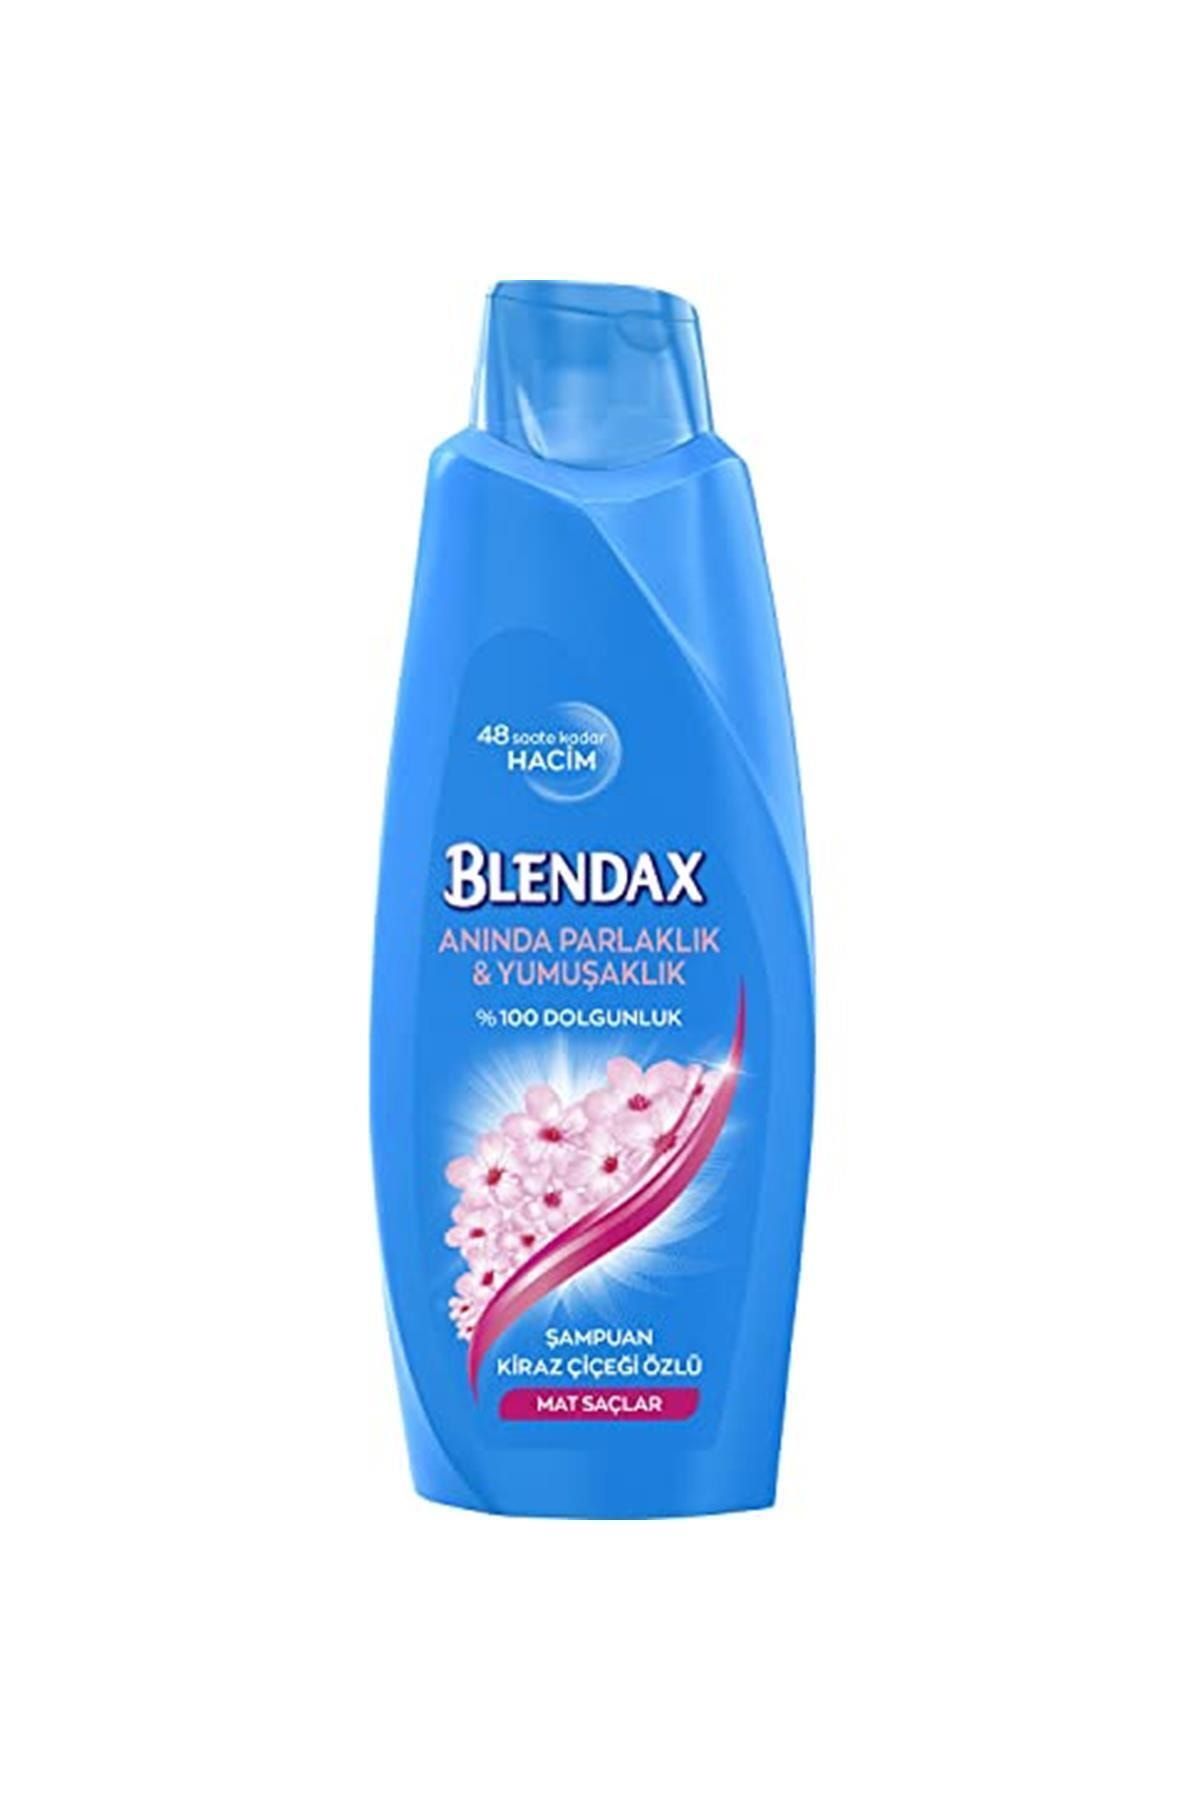 Blendax Kiraz Çiçeği Özlü Şampuan, 500 Ml Kategori: Şampuan